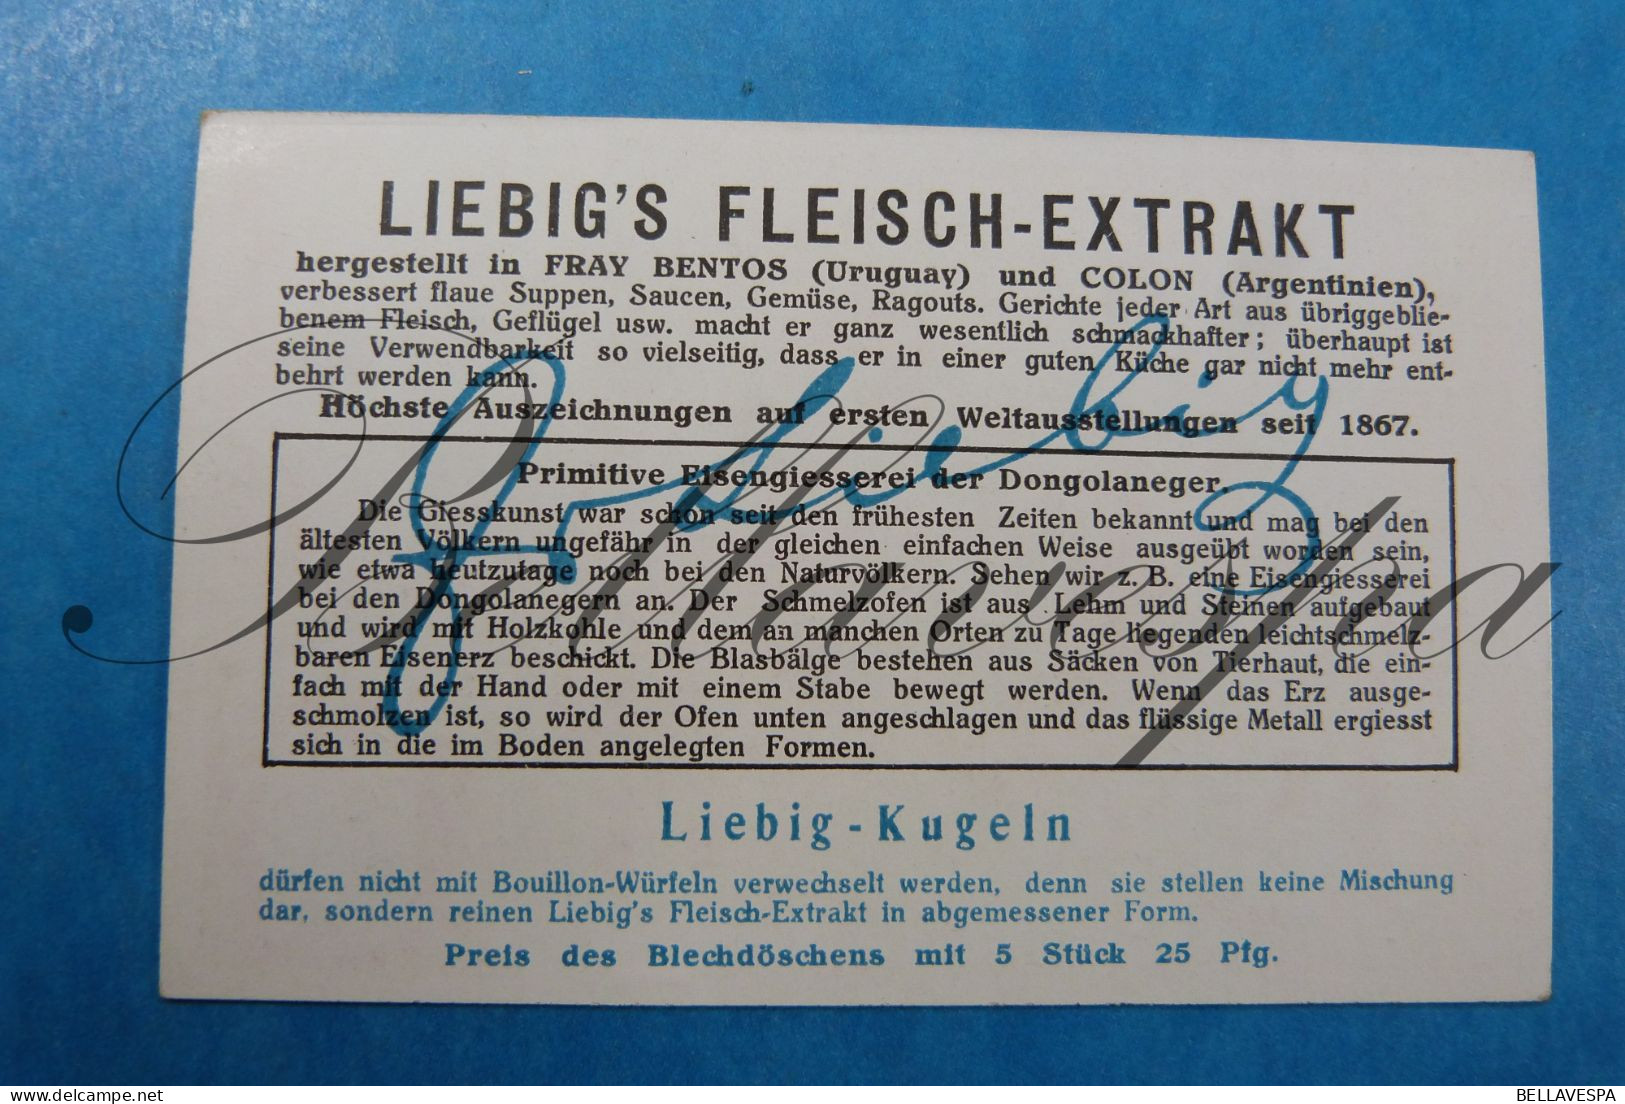 Liebig Germany n° 1117 Die entwickelung der giesskunst.lot x 6 pc ferro en Non-Ferro Gieterijen Ovens Raki Kroes.